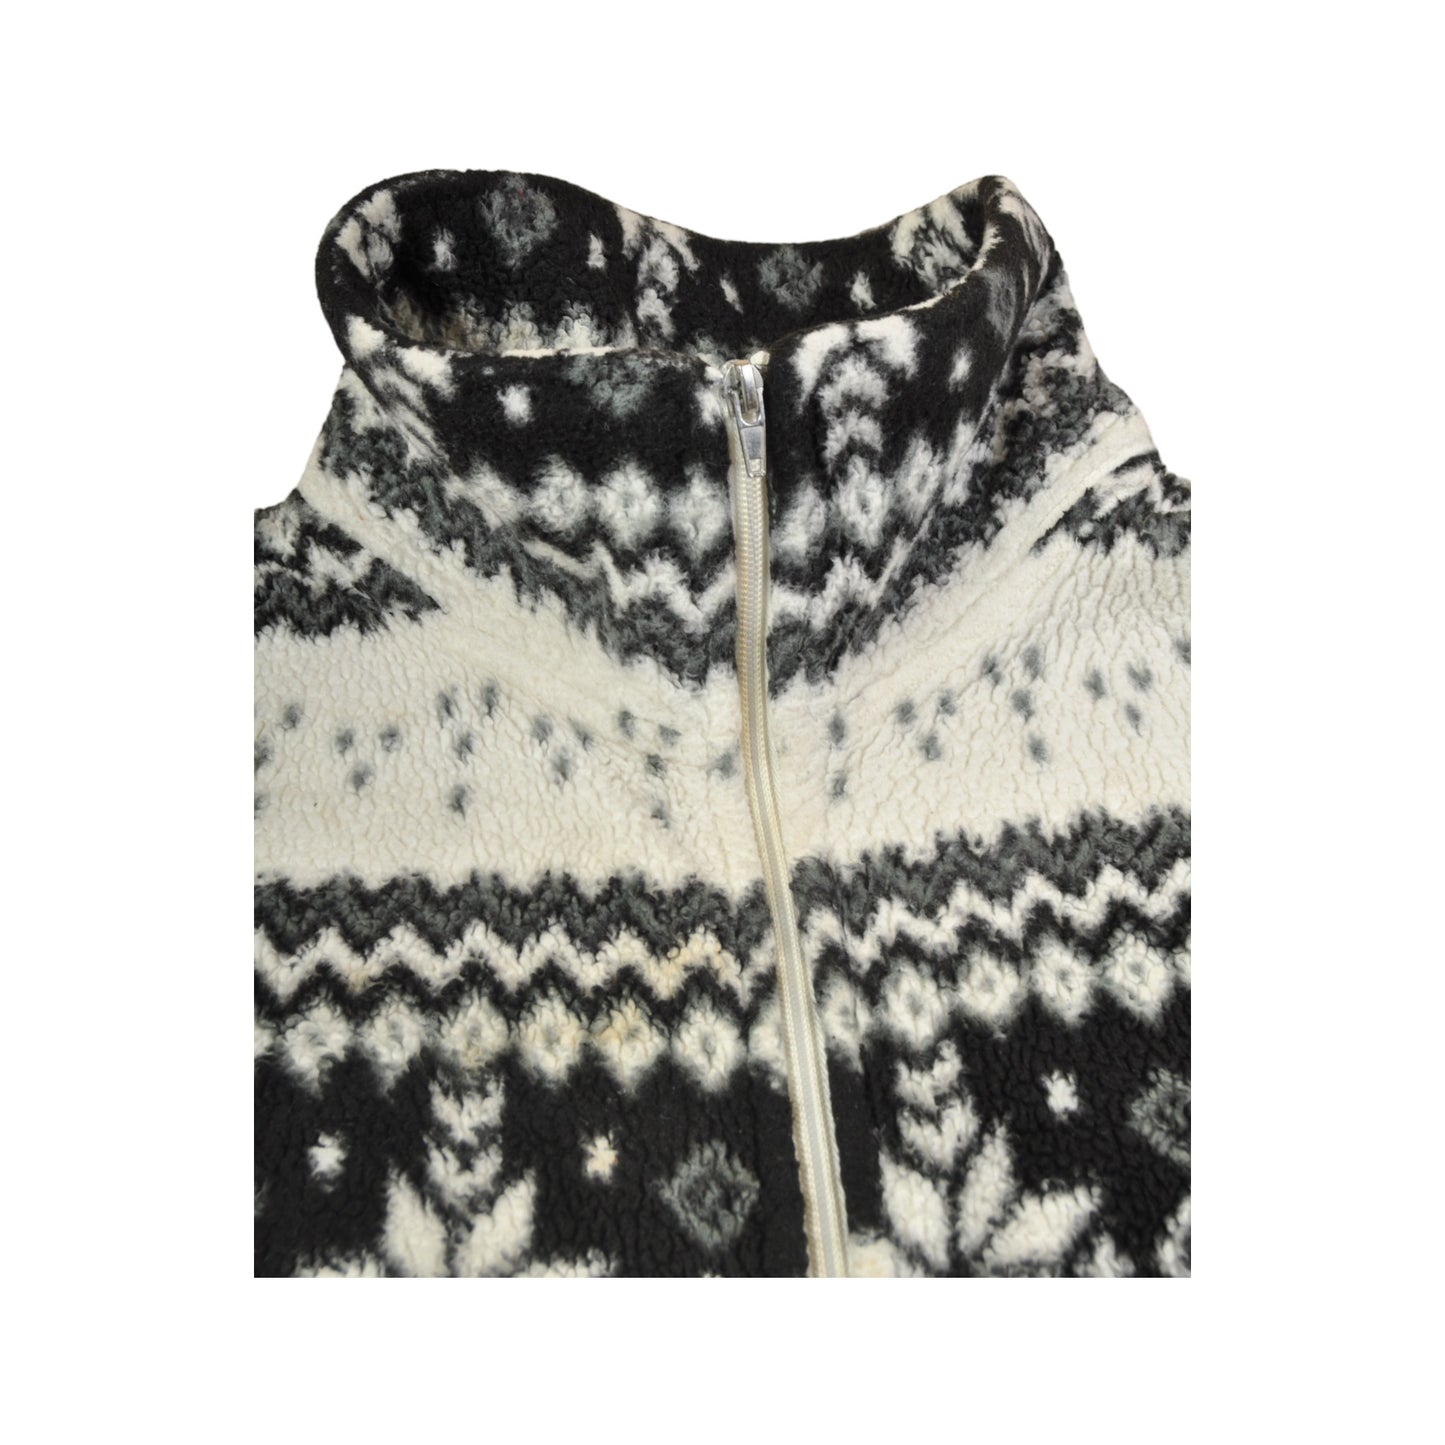 Vintage Fleece Jacket Retro Snowflake Pattern Black/White Ladies XXL